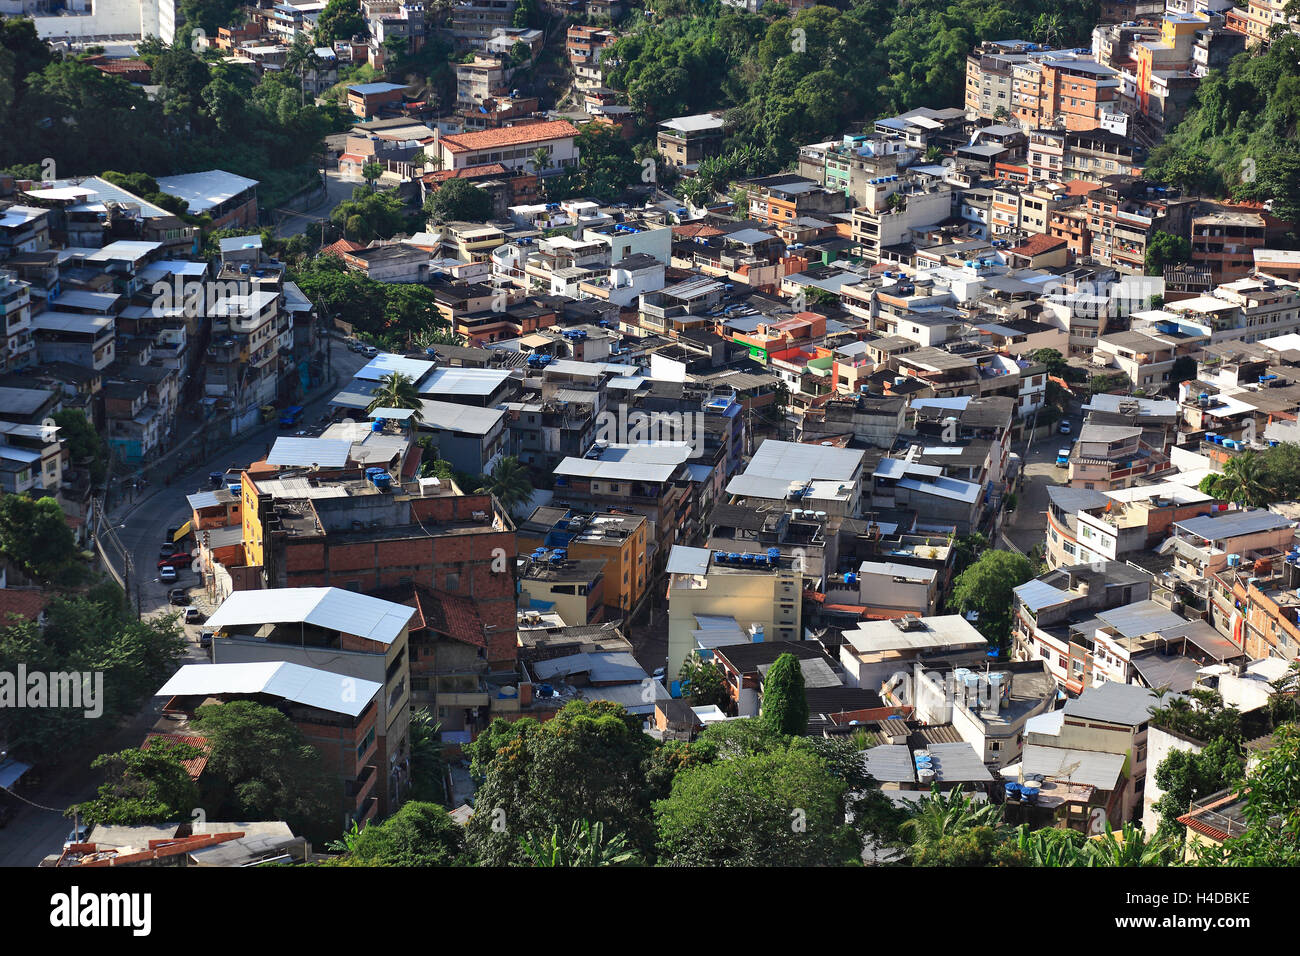 View at the Favelas between Santa Teresa and Centro, Rio de Janeiro, Brazil Stock Photo